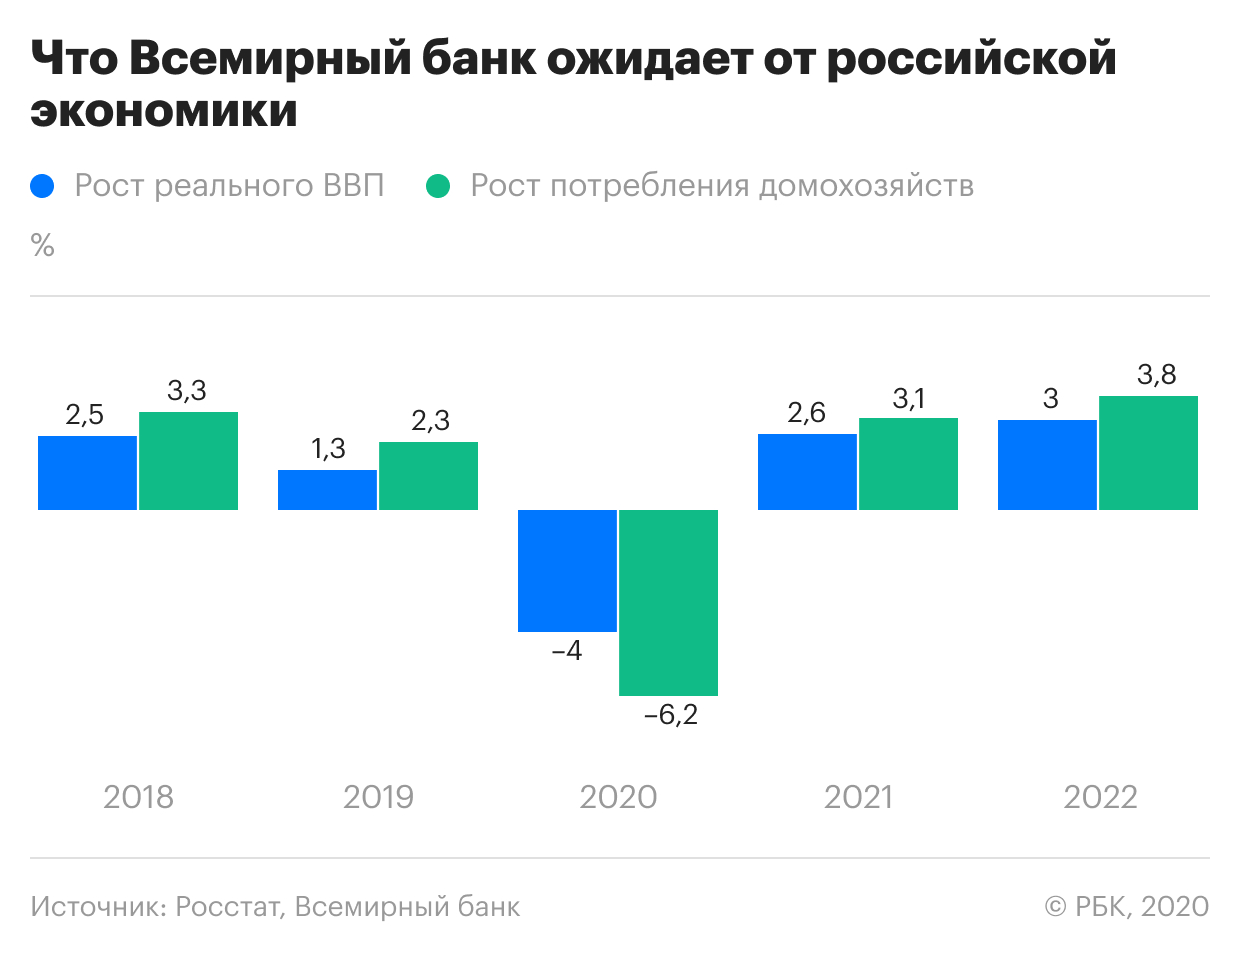 Всемирный банк оценил ситуацию с бедностью в России на фоне пандемии